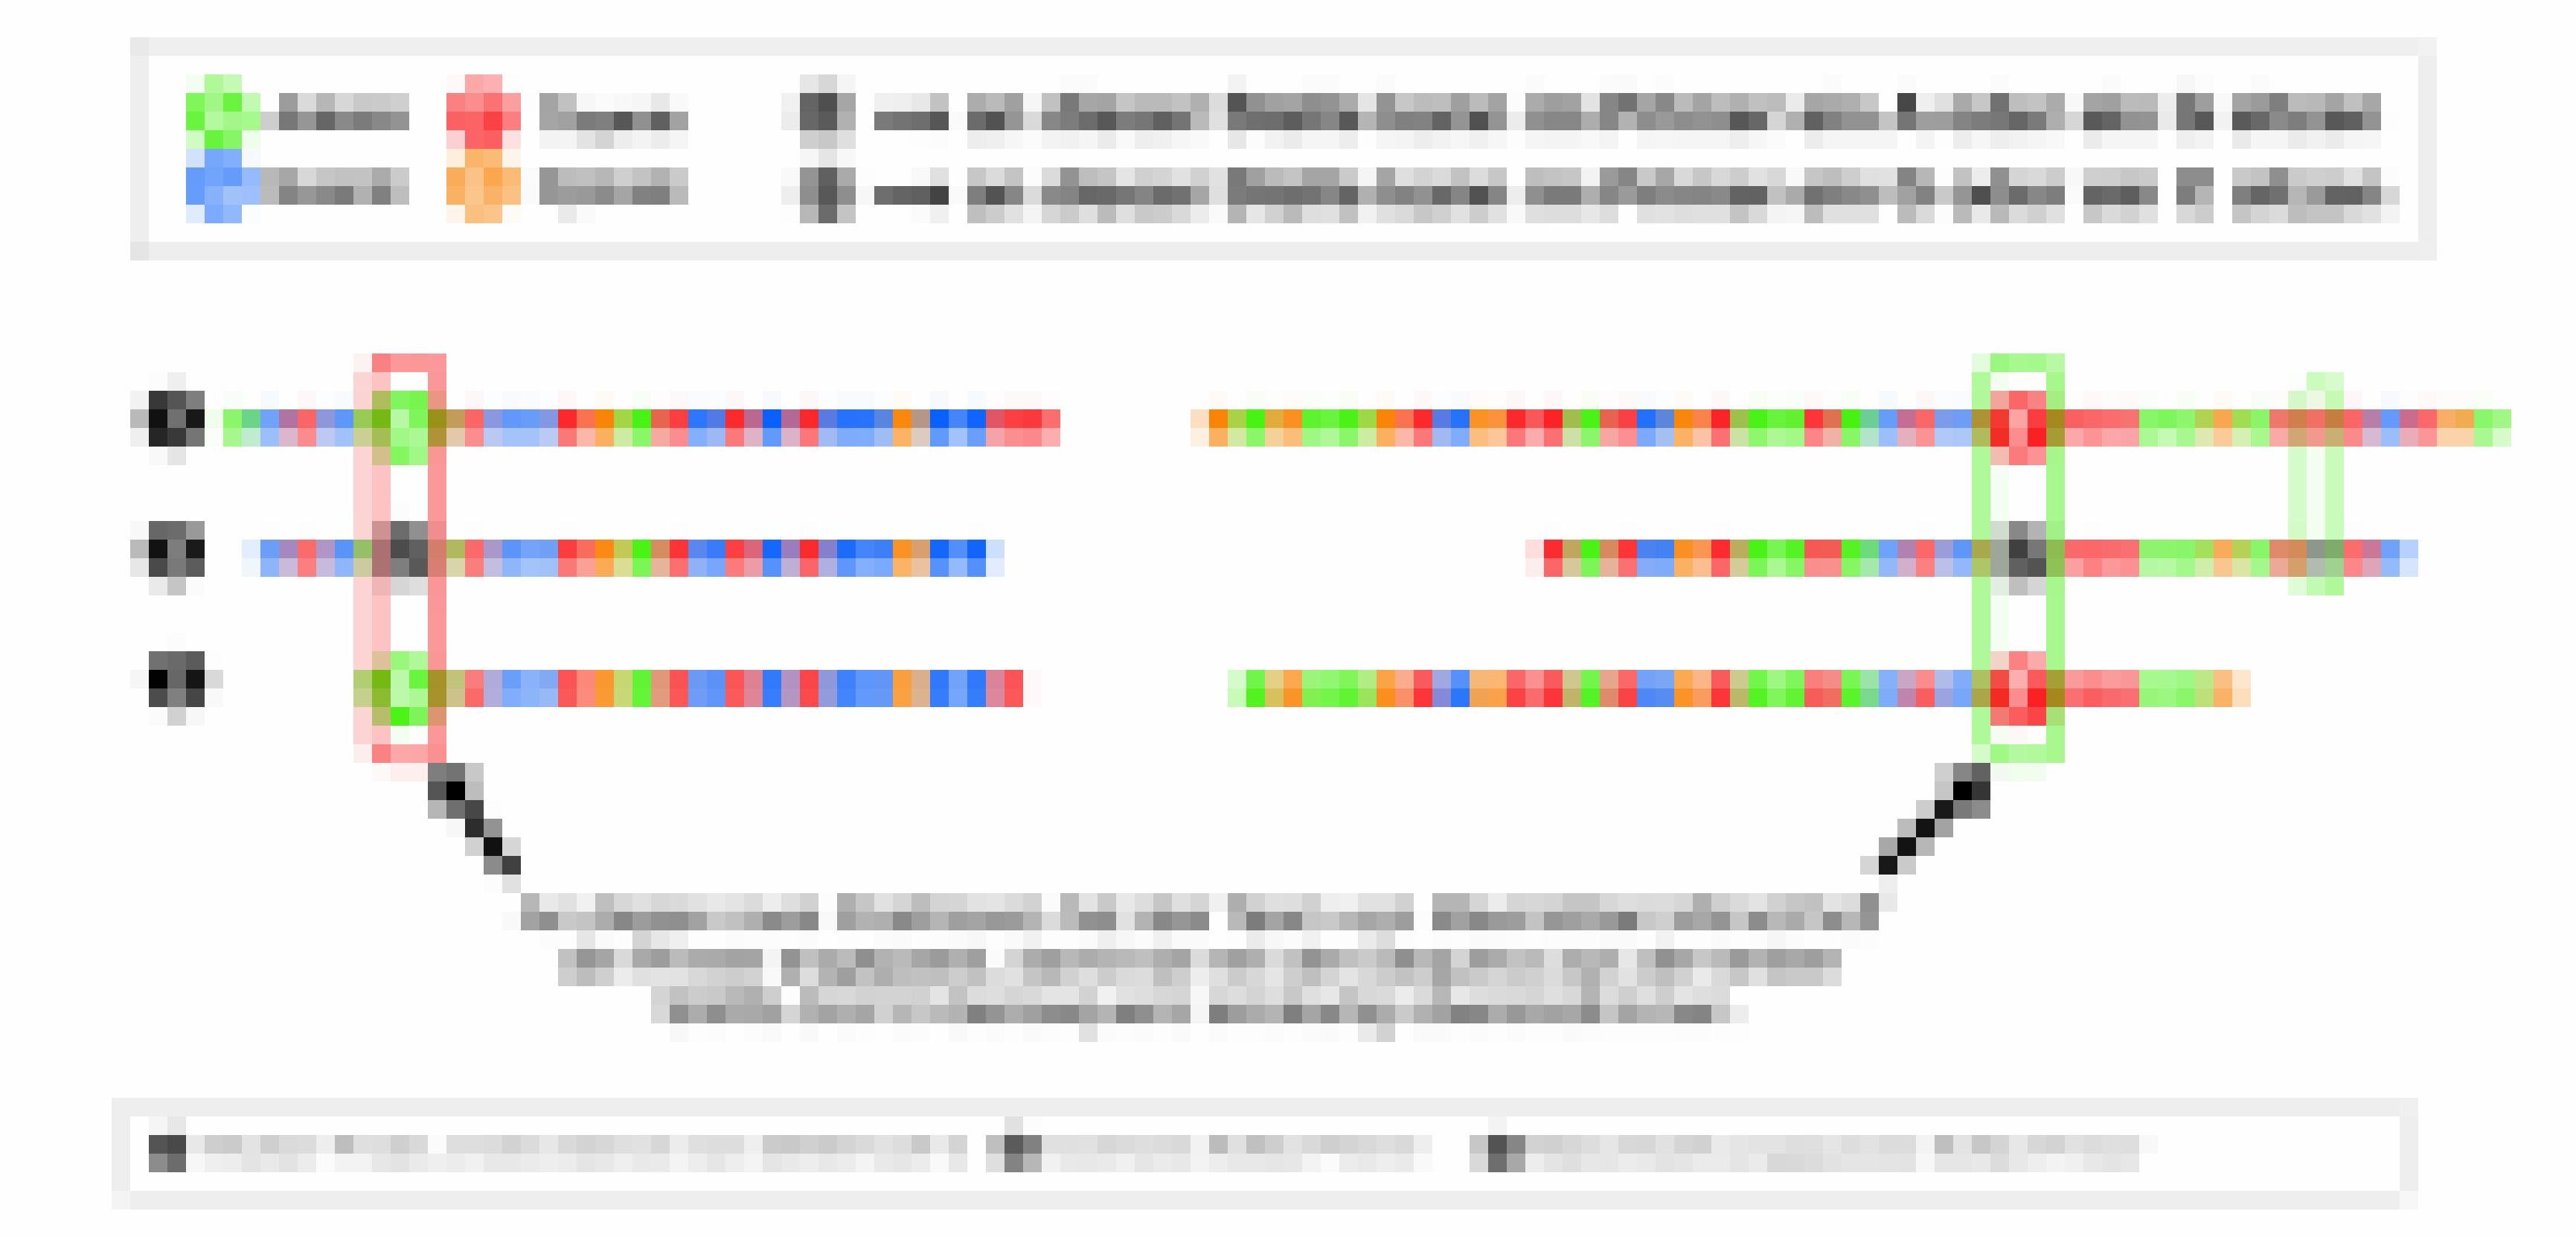 Drei Primersequenzen im Vergleich: 1. des ersten sequenziellen SARS-2-Genoms aus Wuhan, 2. degenerierte Primersequenz von Corman, 3. angepasste Primersequenz von Munchhoff.